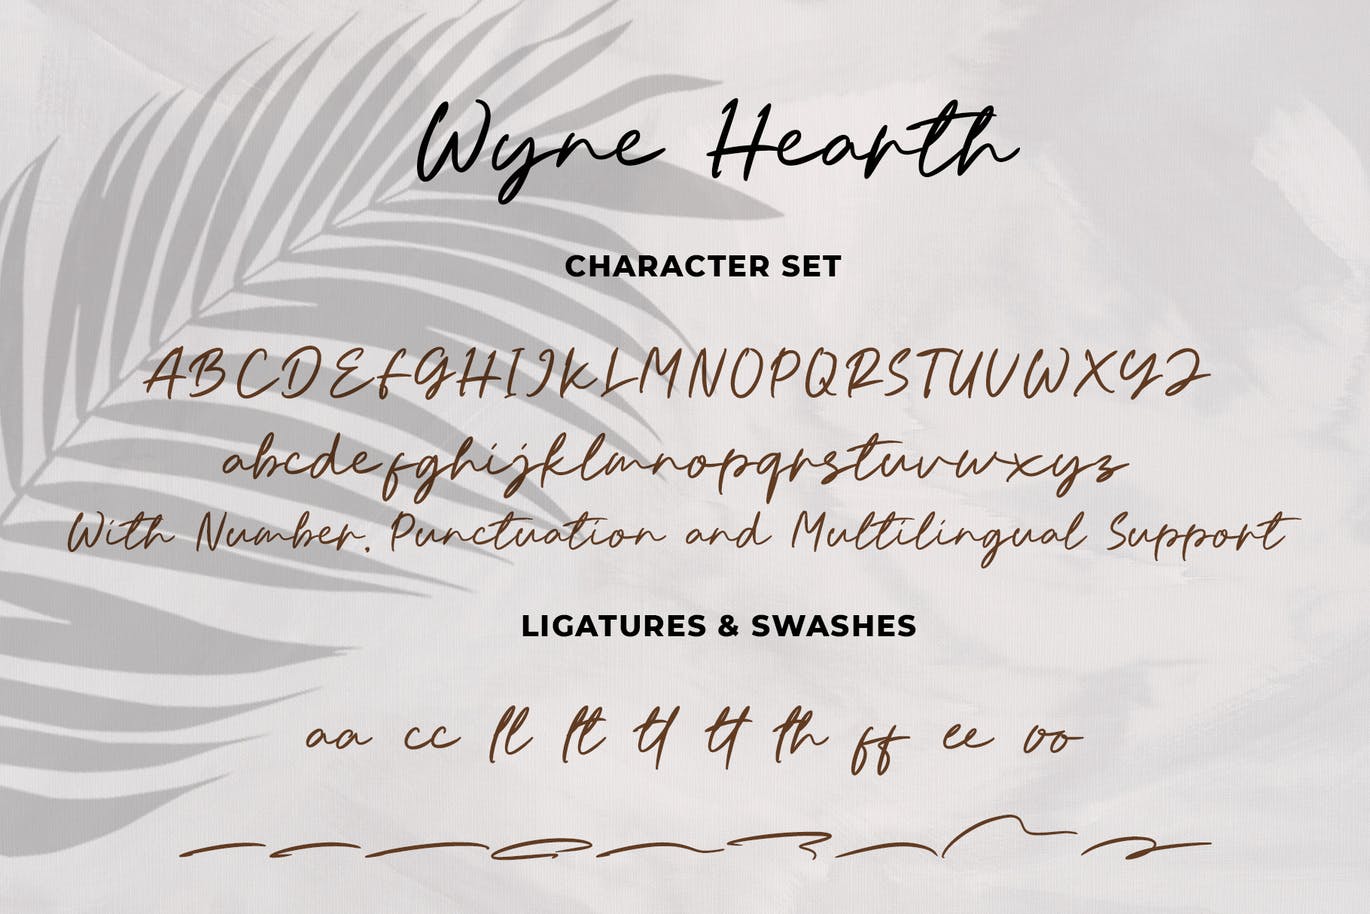 连字手写英文字体素材 Wyne Hearth 设计素材 第4张